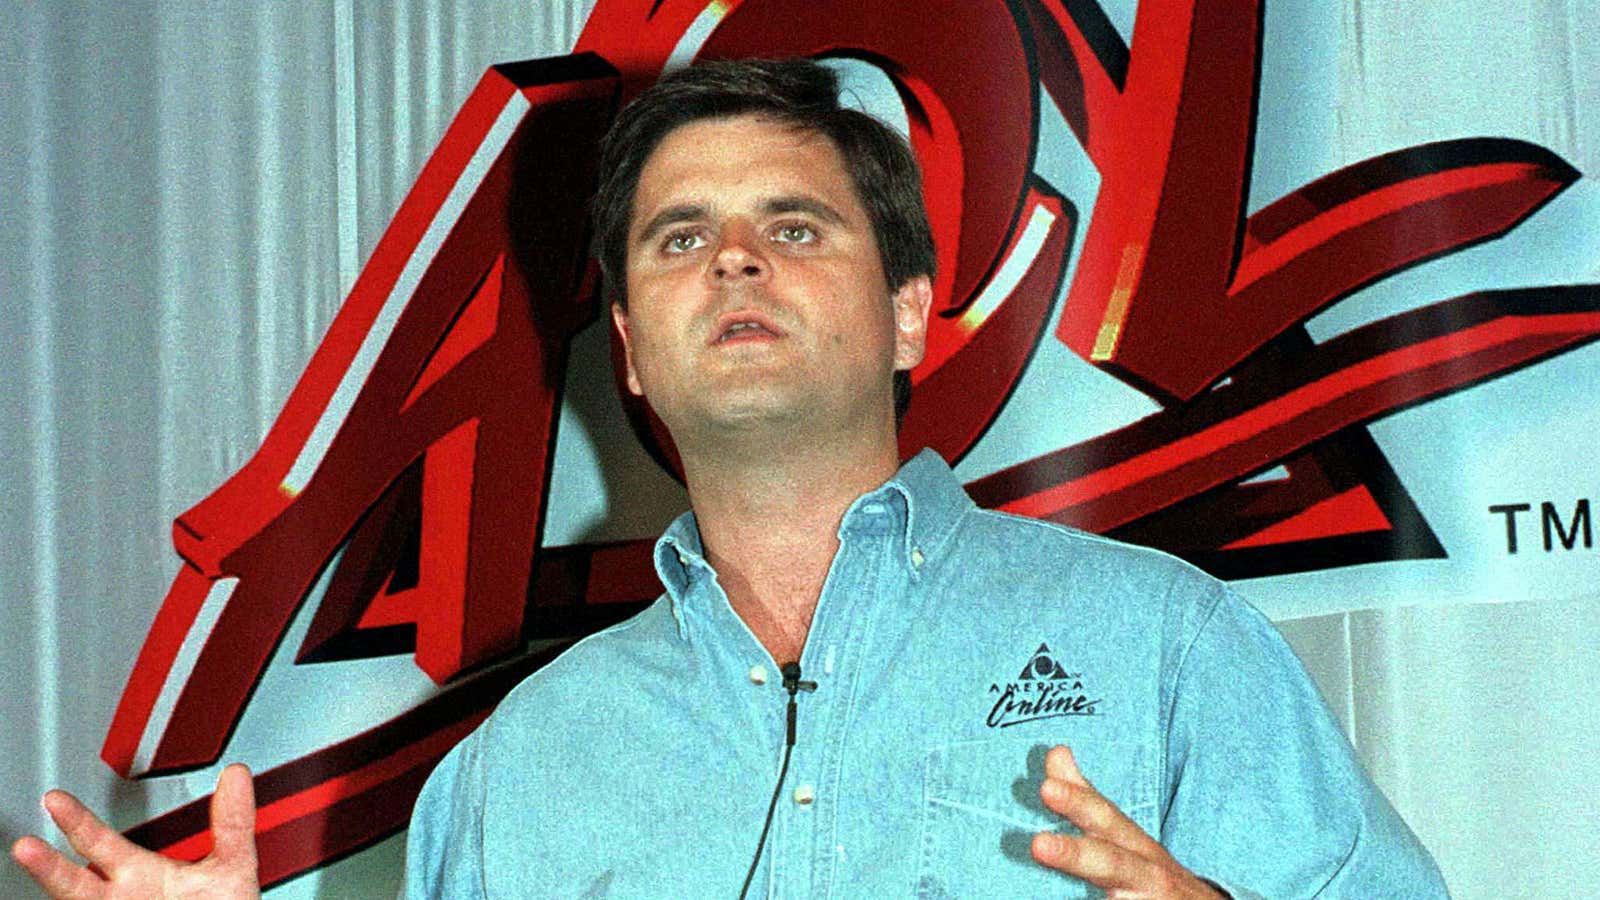 AOL boss Steve Case, back in the good ‘ol days.